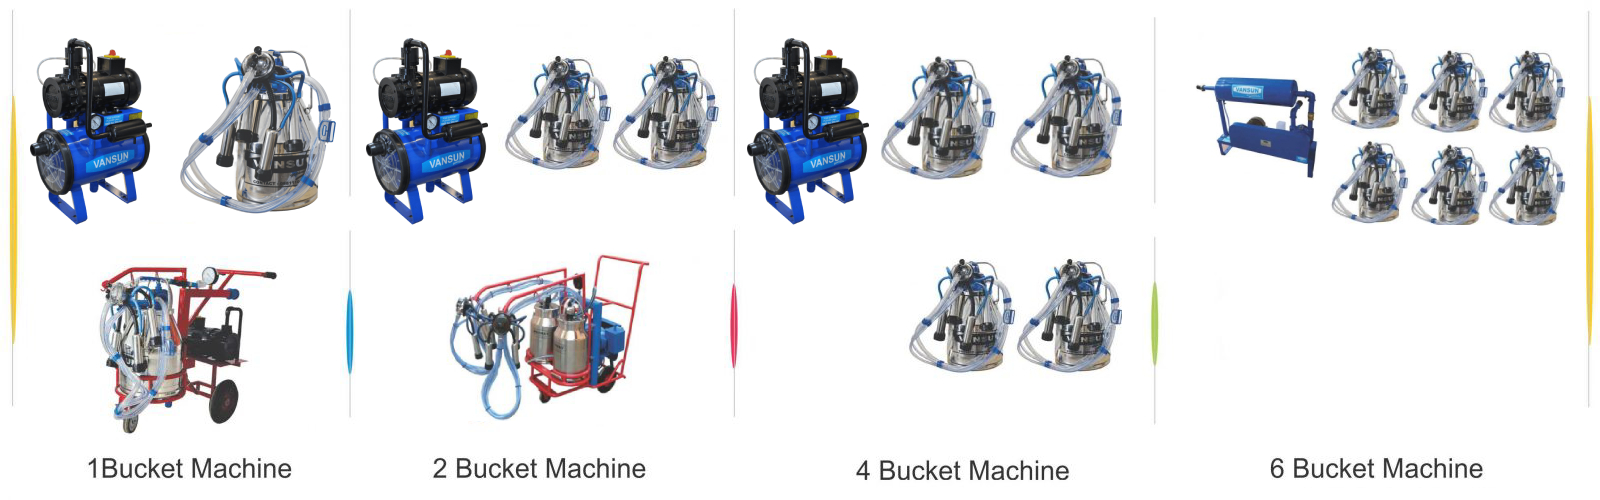 Bucket Milking Machine Types